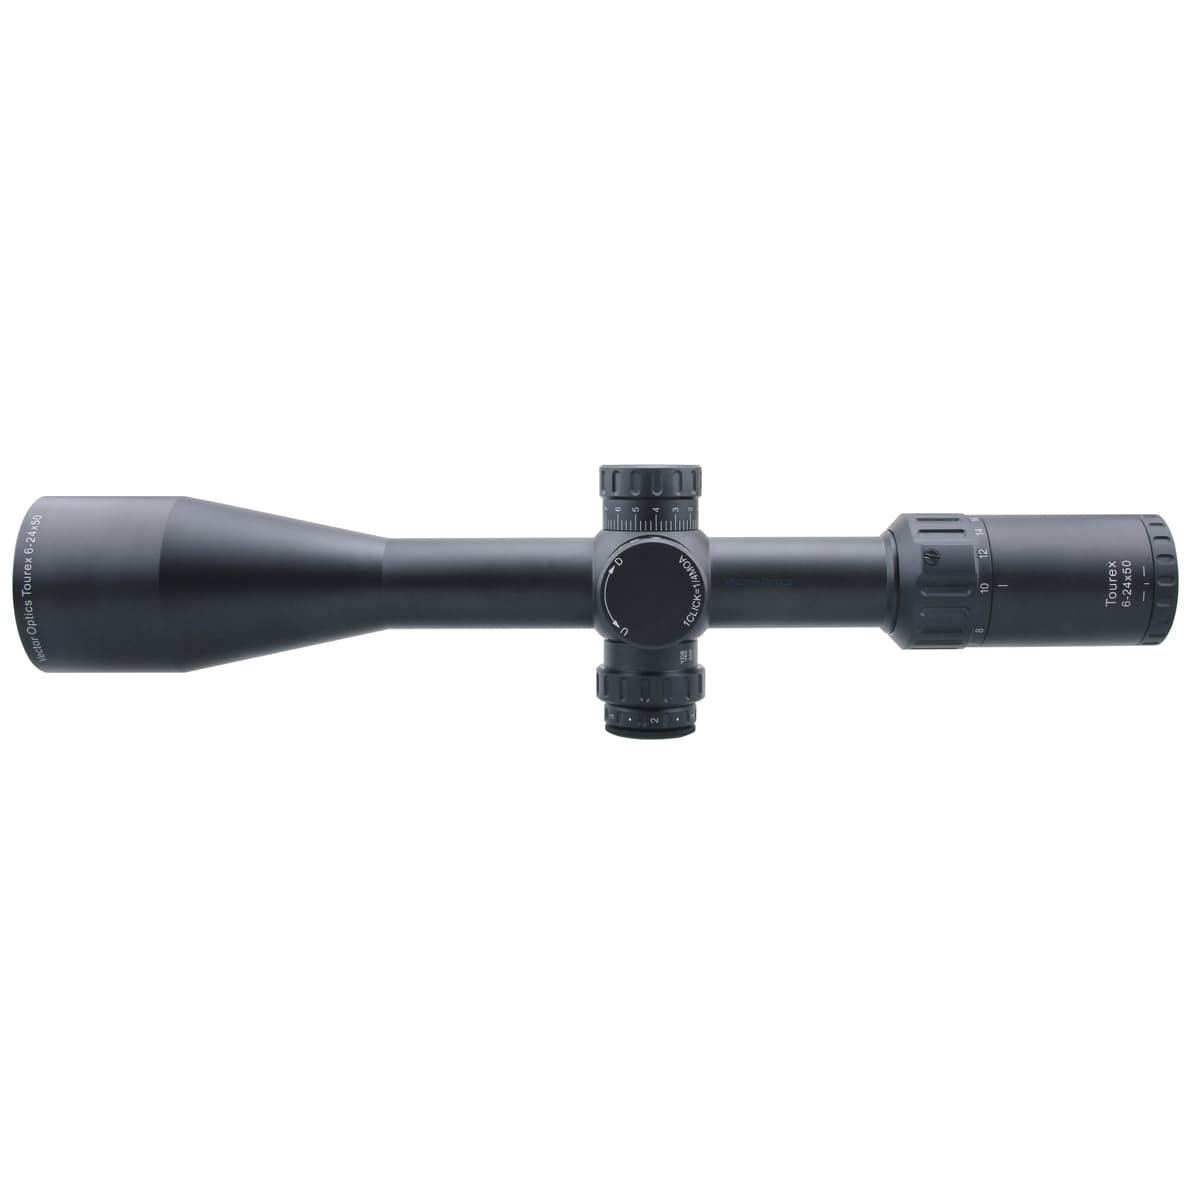 Tourex 6-24x50 FFP Riflescope